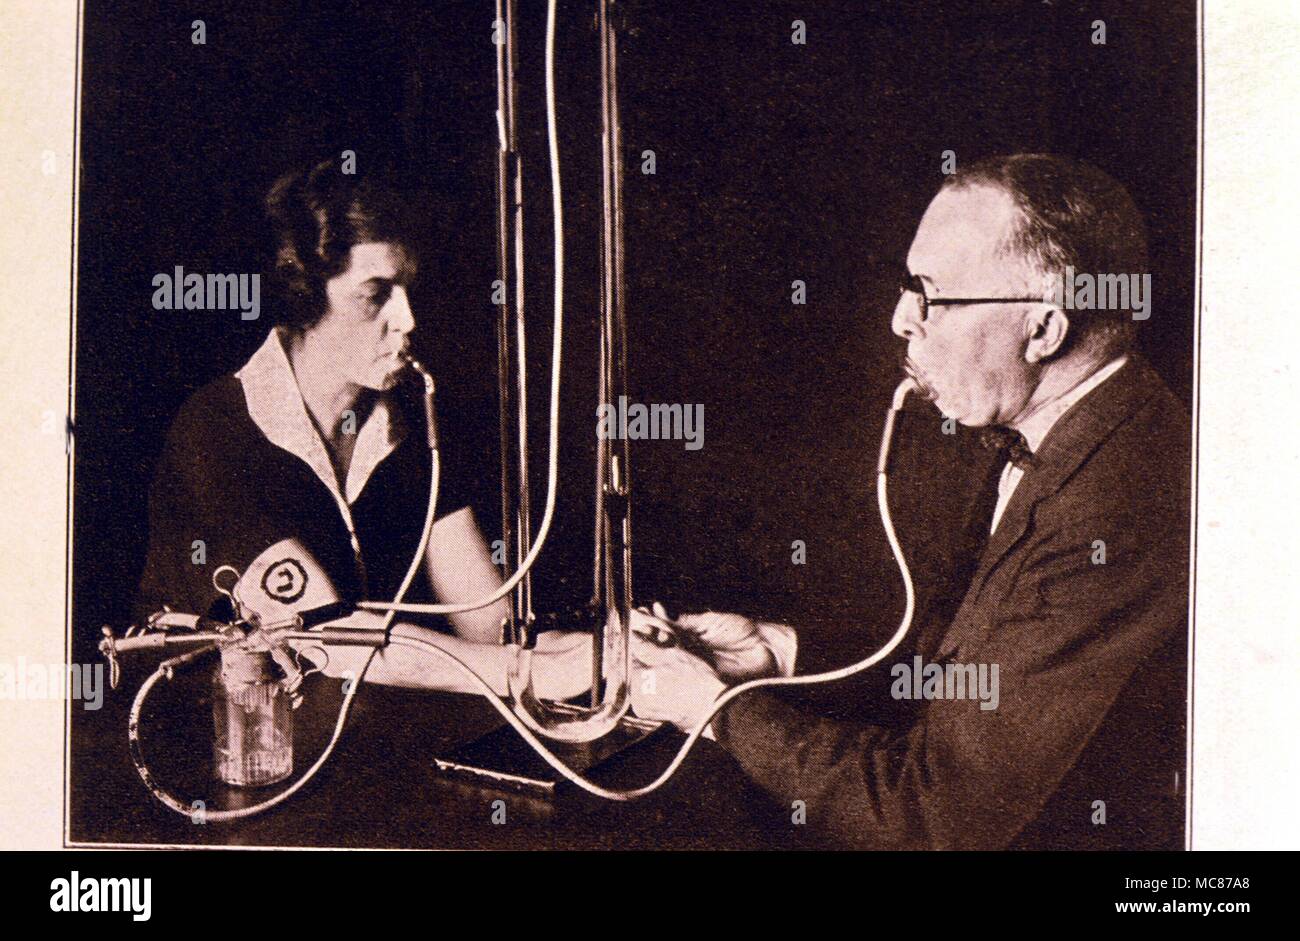 SEANCES - UNTERSUCHUNGSMETHODEN Dr. Richardson's Voice-cut-out-Maschine für die Prüfung der Mittel, "argery', die manifestiert ist die Stimme Spirit" "Walter". Die Tests wurden an der New York und Boston seances des SPR 1925 statt. Stockfoto